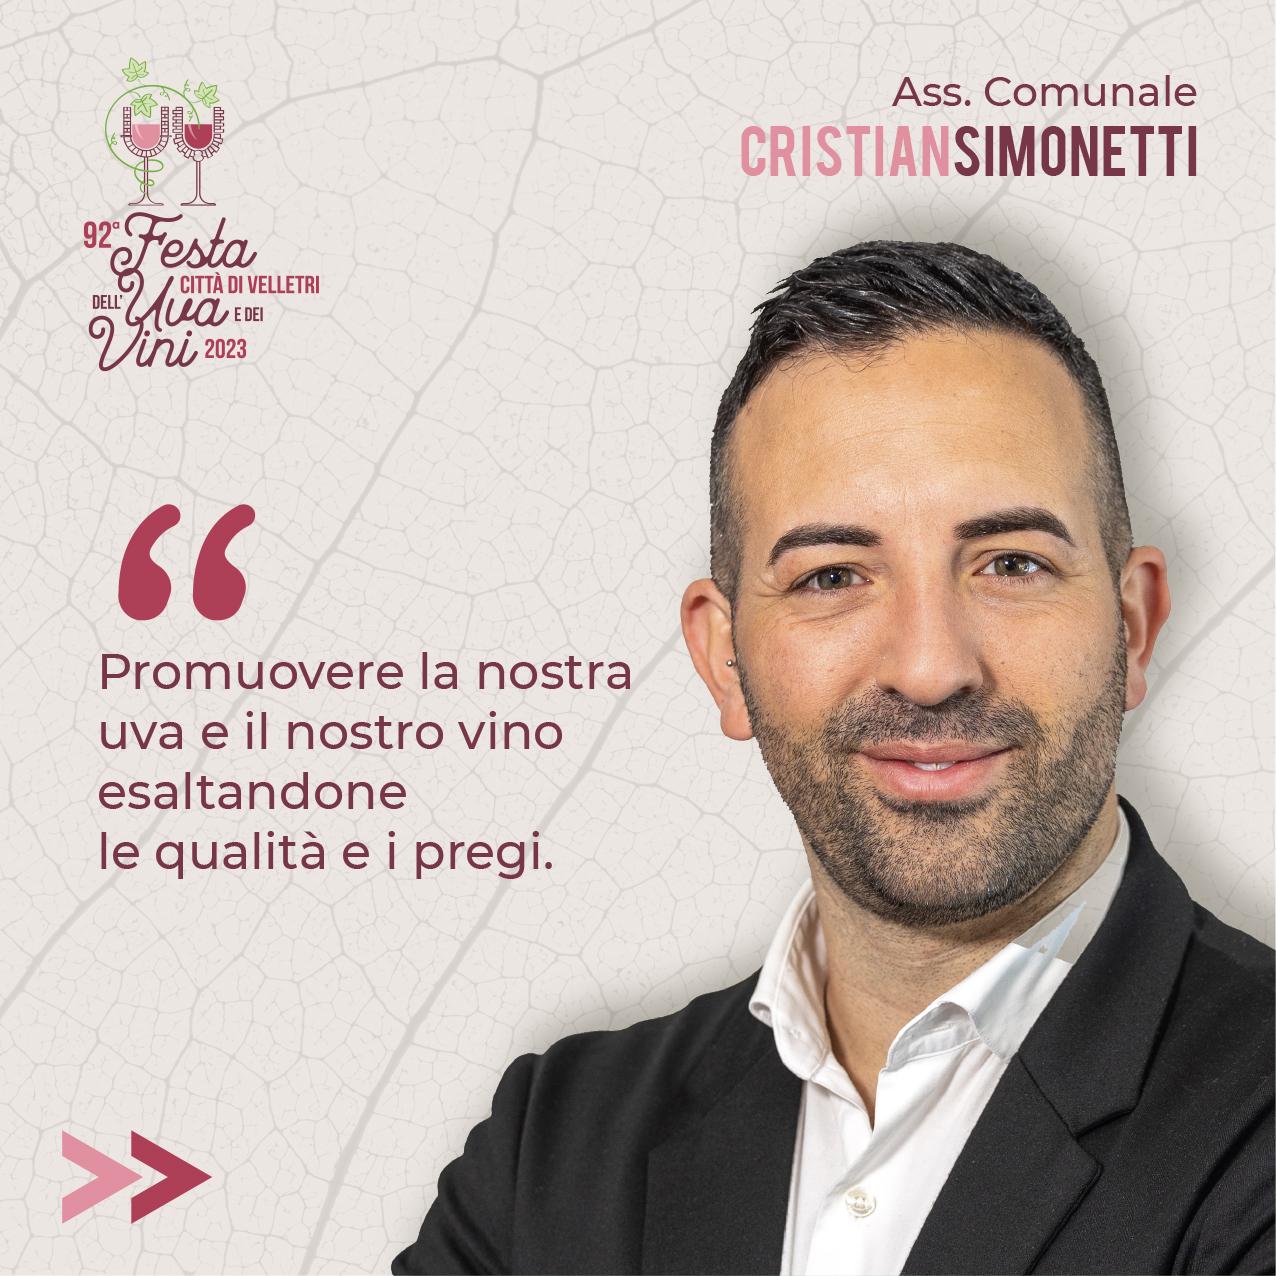 Intervista all'Assessore Cristian Simonetti: 